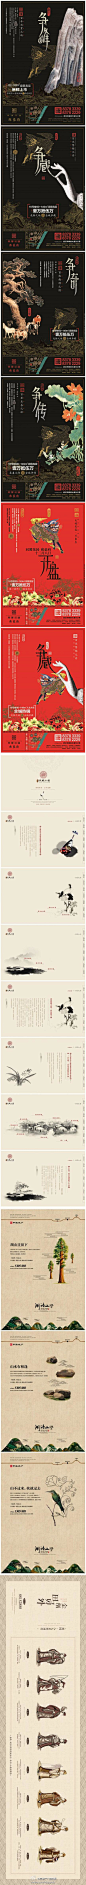 #房地产广告# 4组中国风房地产广告设计。